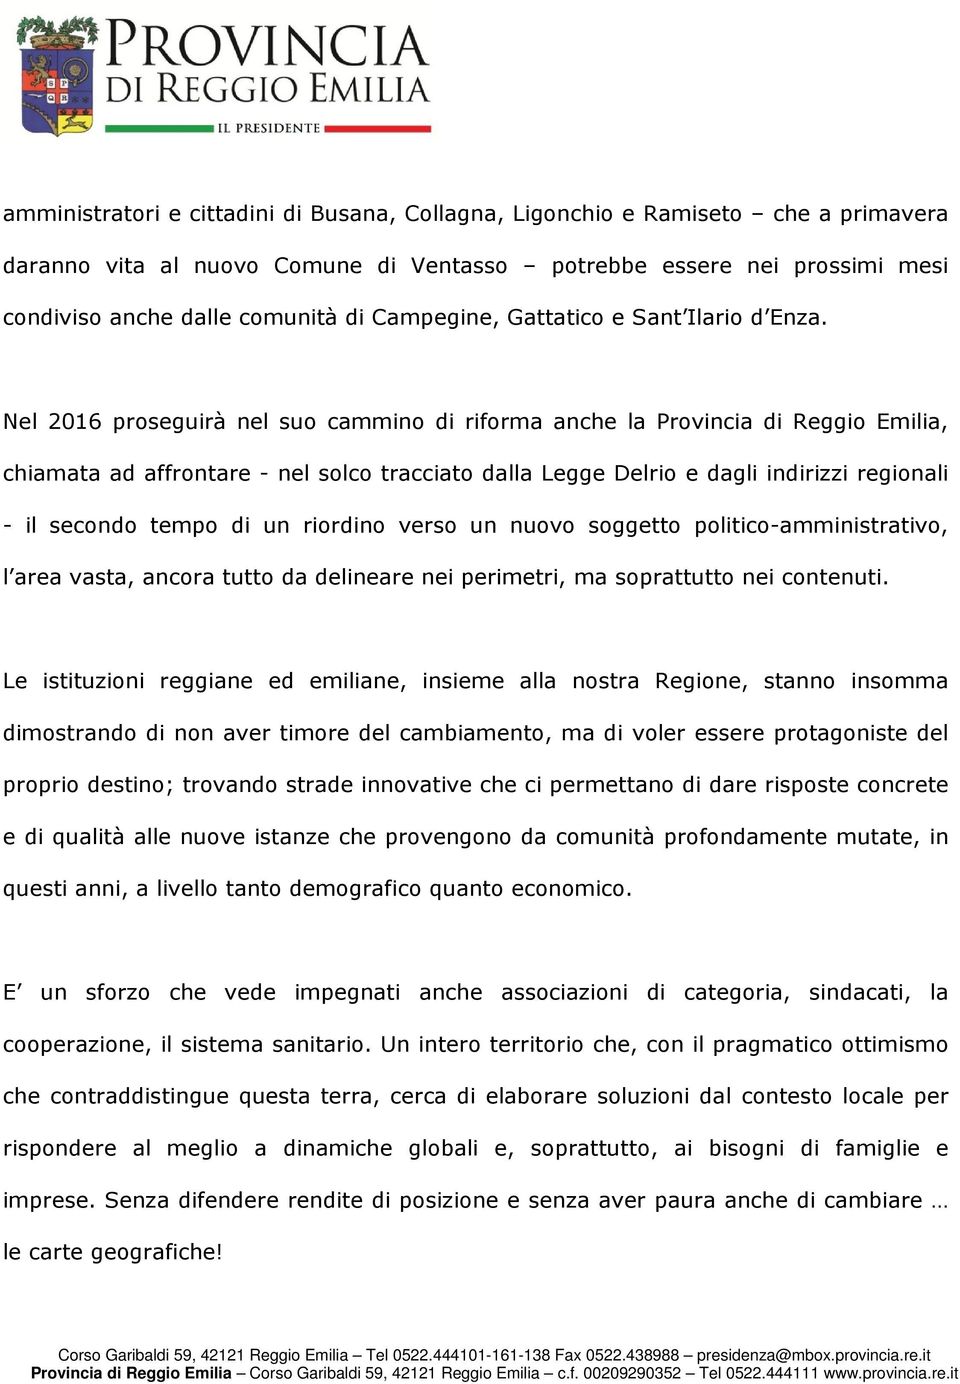 Nel 2016 proseguirà nel suo cammino di riforma anche la Provincia di Reggio Emilia, chiamata ad affrontare - nel solco tracciato dalla Legge Delrio e dagli indirizzi regionali - il secondo tempo di